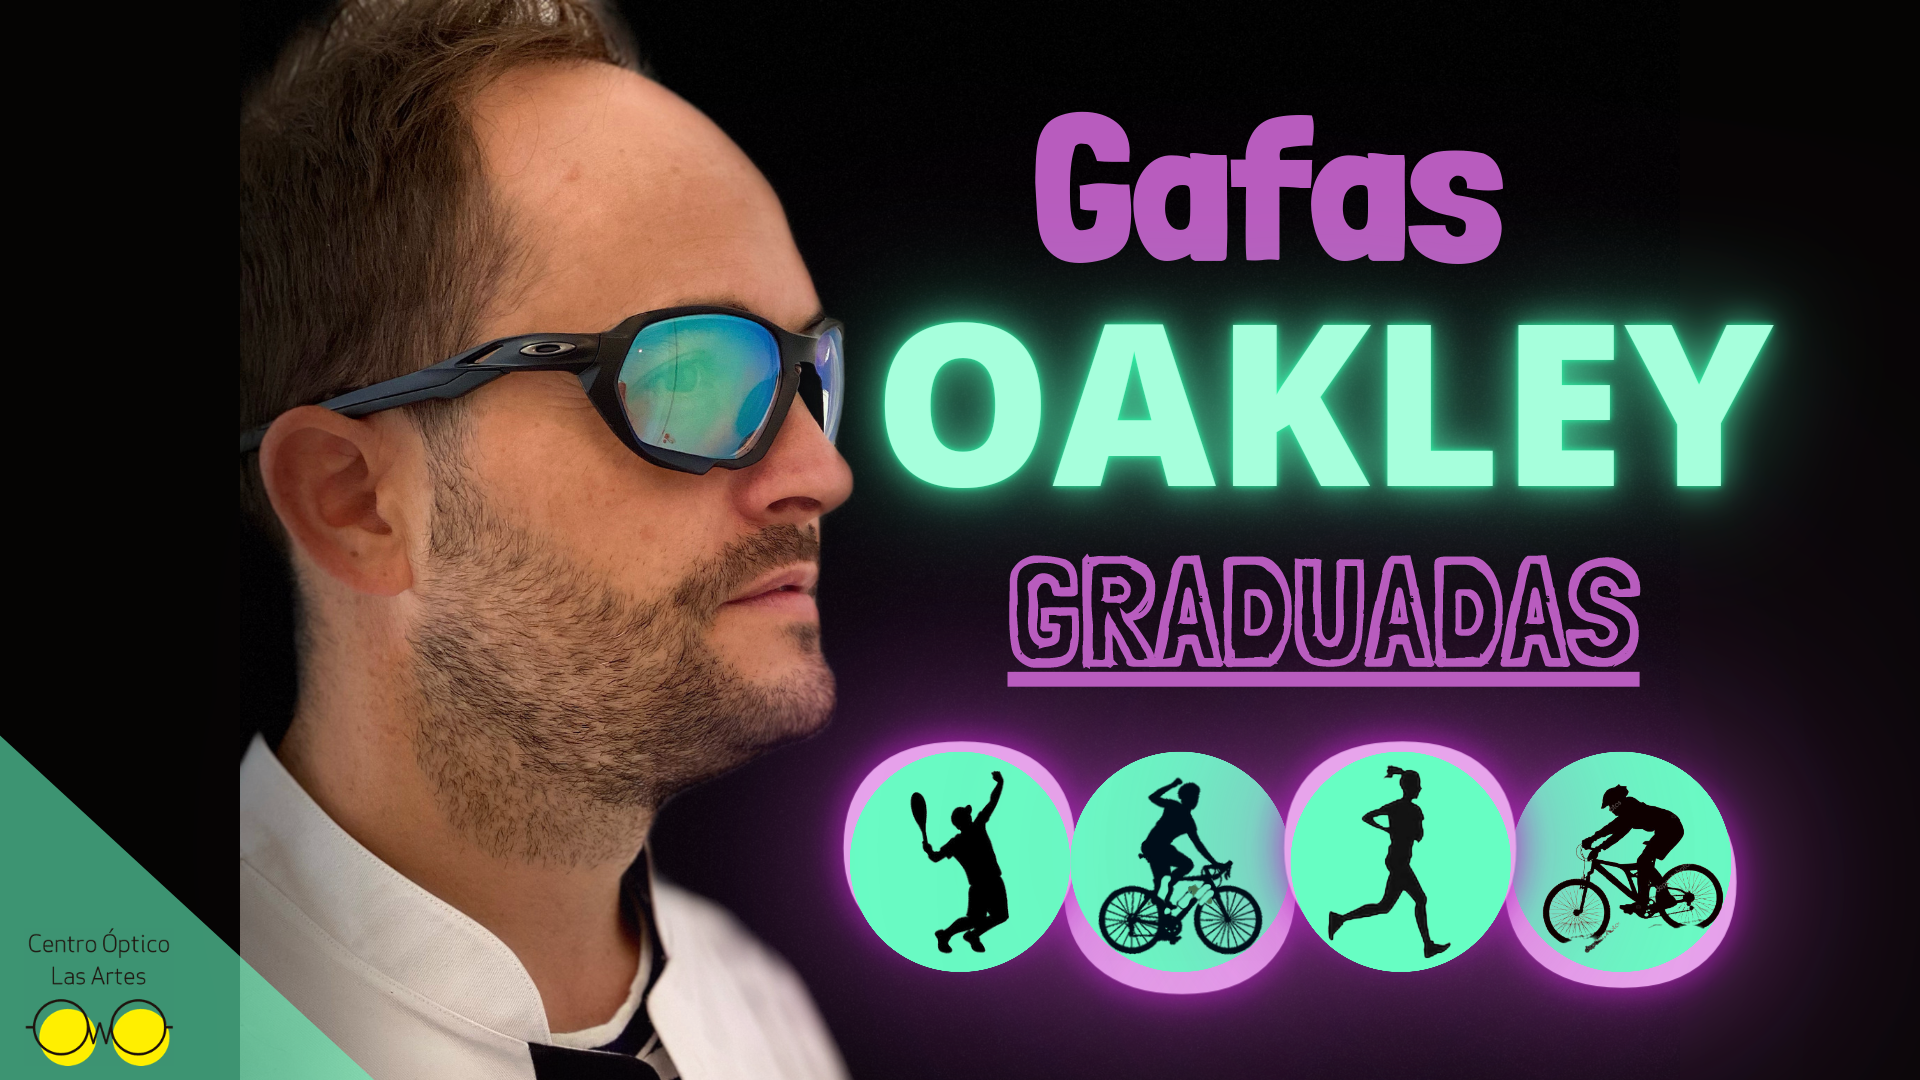 Gafas Oakley graduadas Blog del Centro Óptico Las Artes